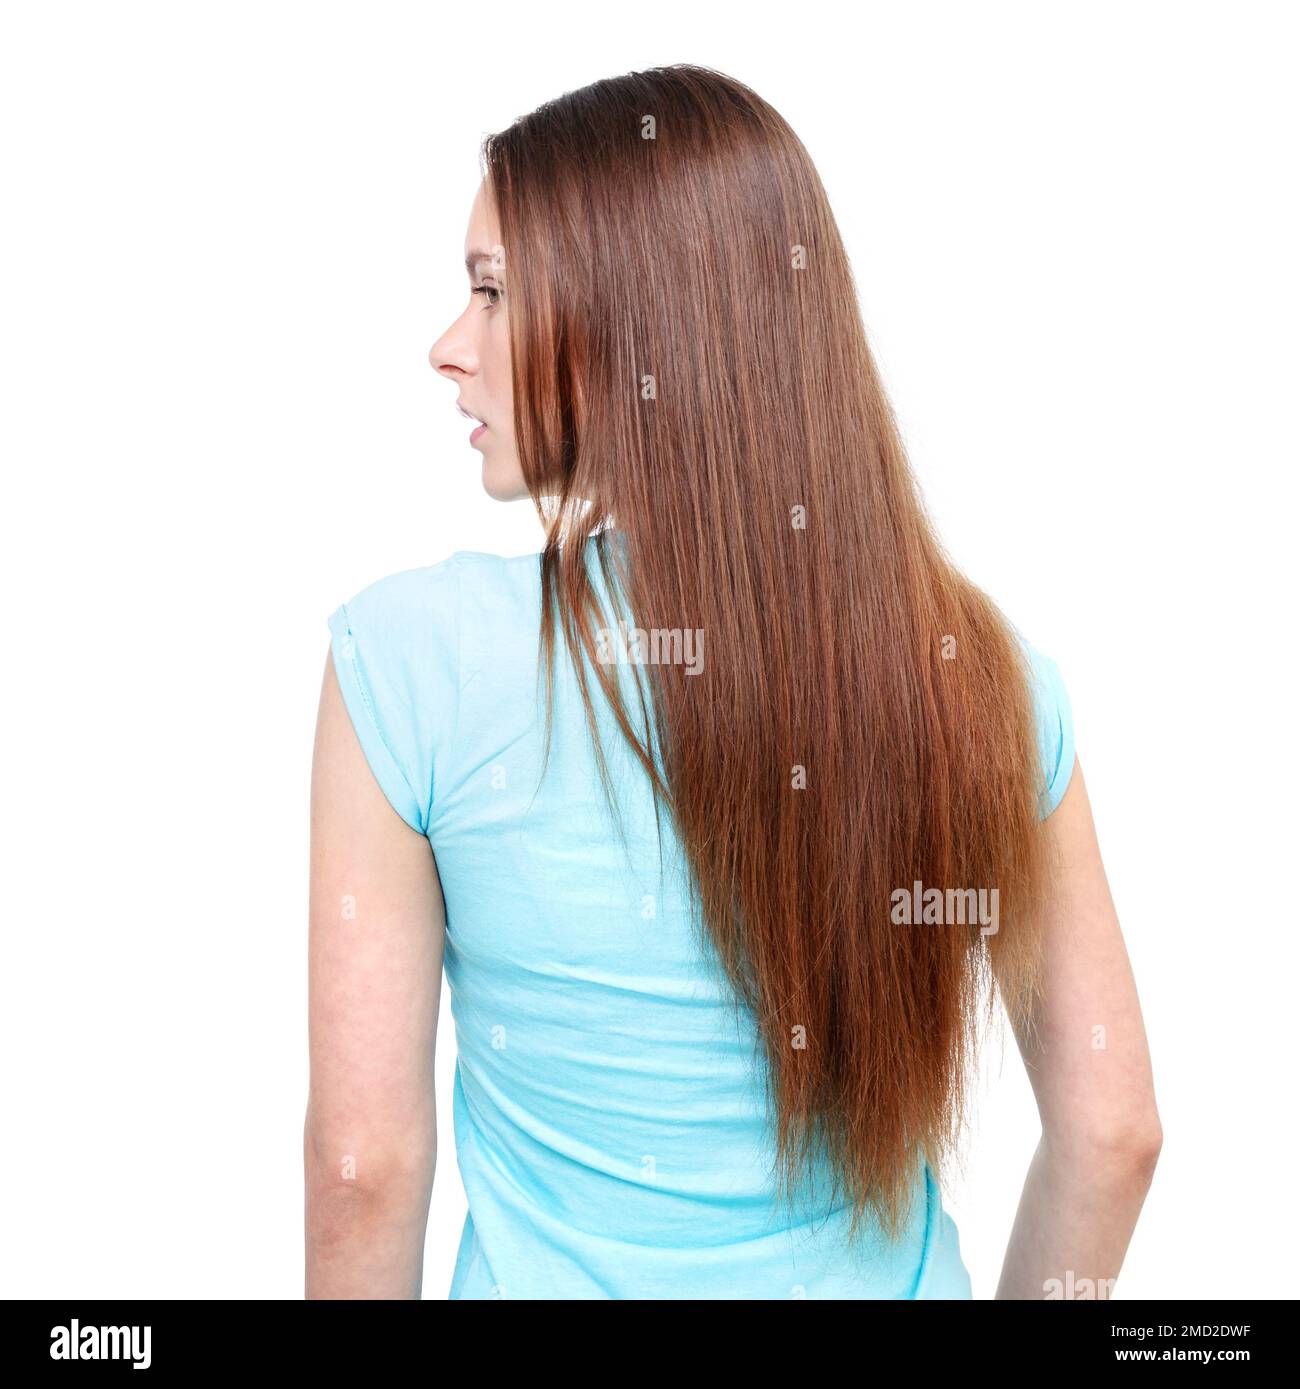 Una donna con lunghi capelli castani dritti viene fotografata da dietro isolata su sfondo bianco. Foto Stock